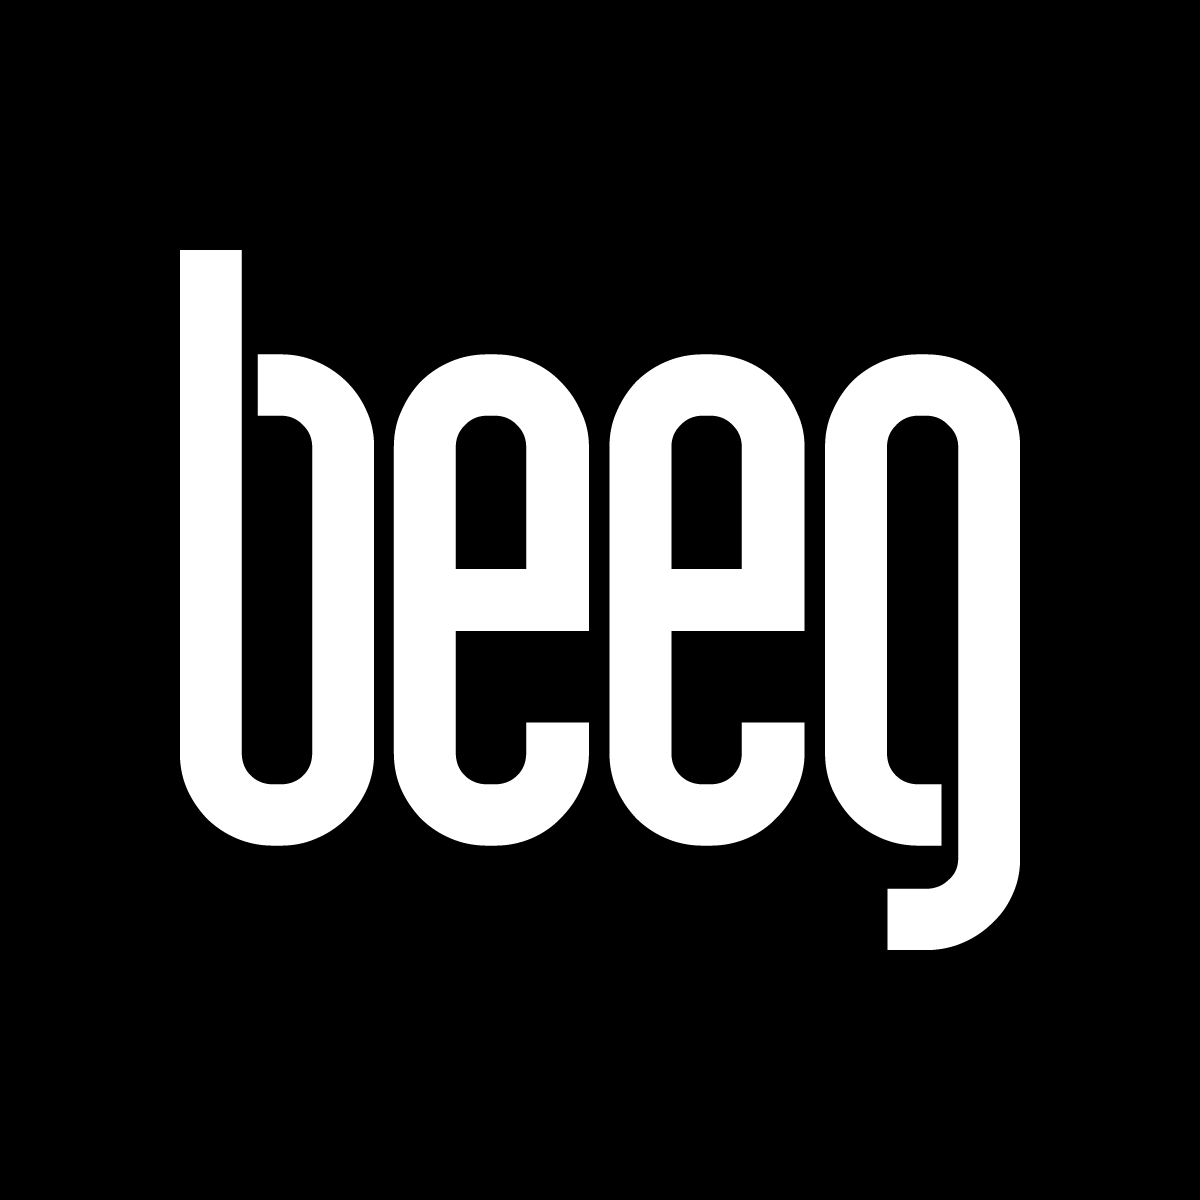 Beeg seex